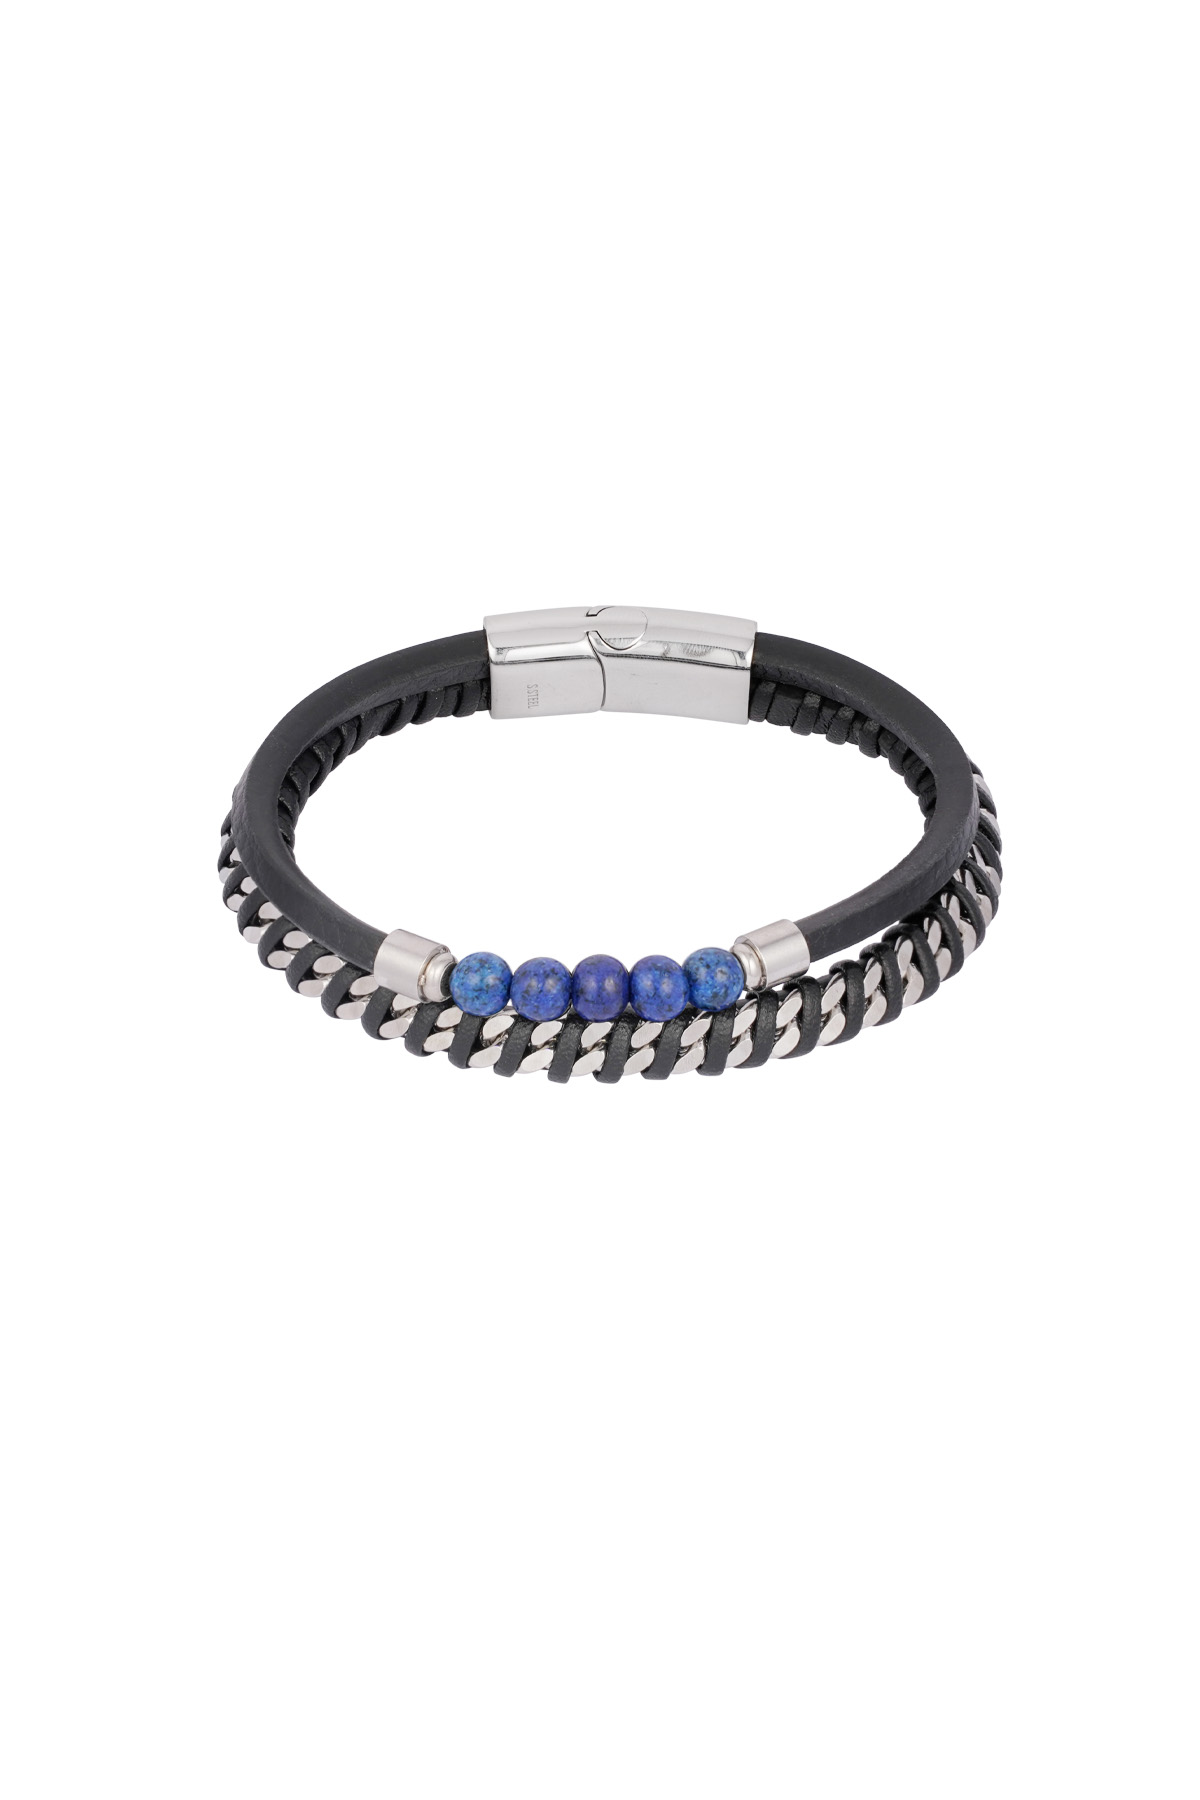 Heren armband serenity - zwart blauw h5 